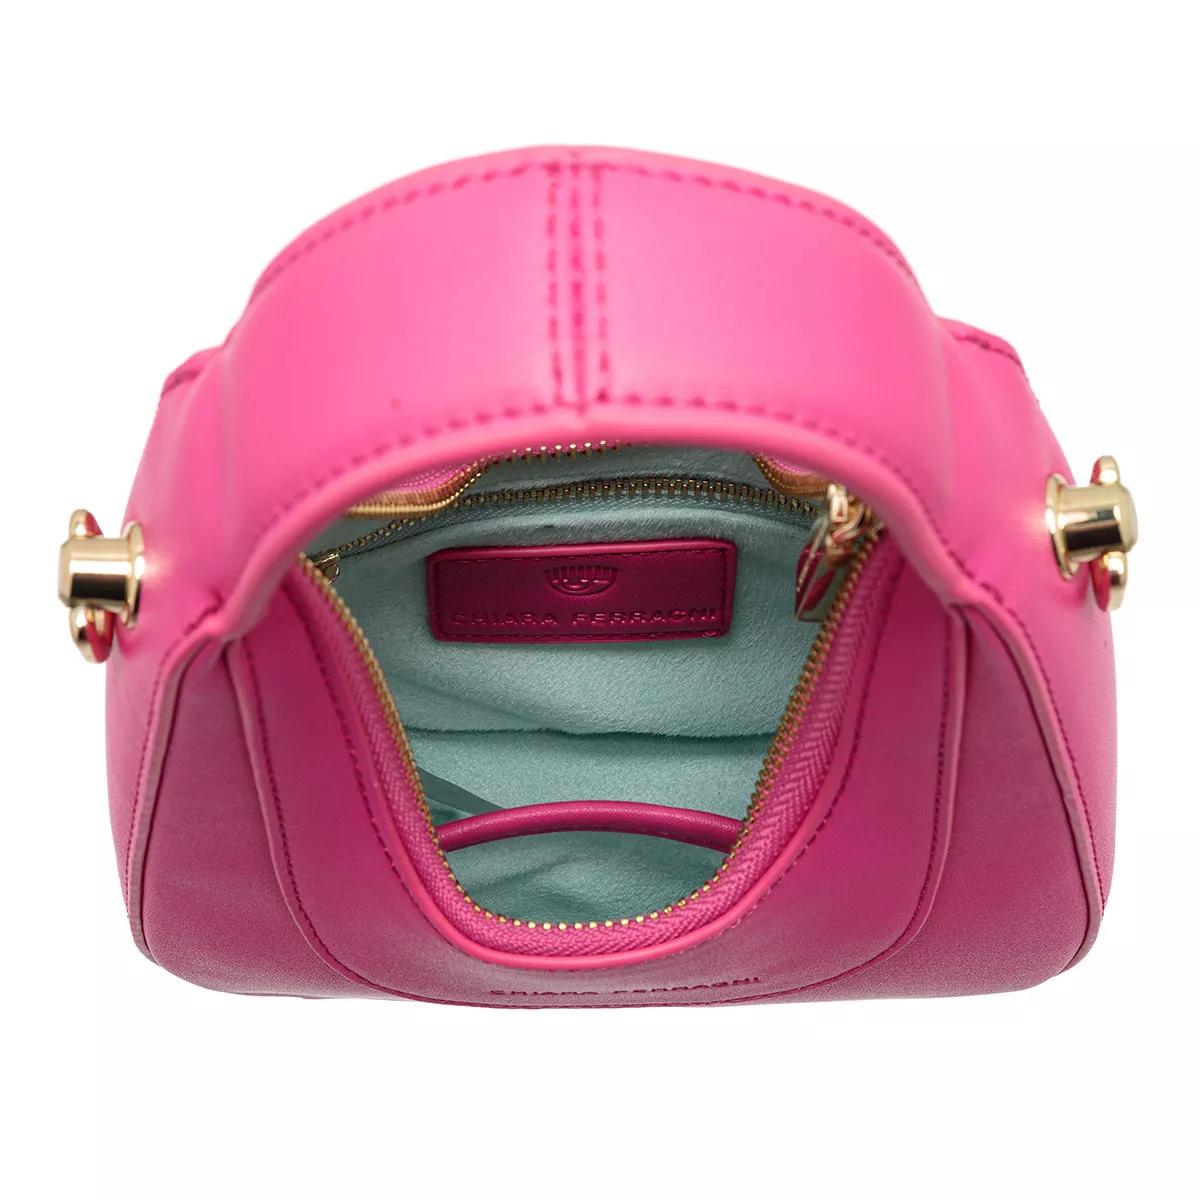 Chiara Ferragni Hobo bags Range G Golden Eye Star Sketch 02 Bags in roze